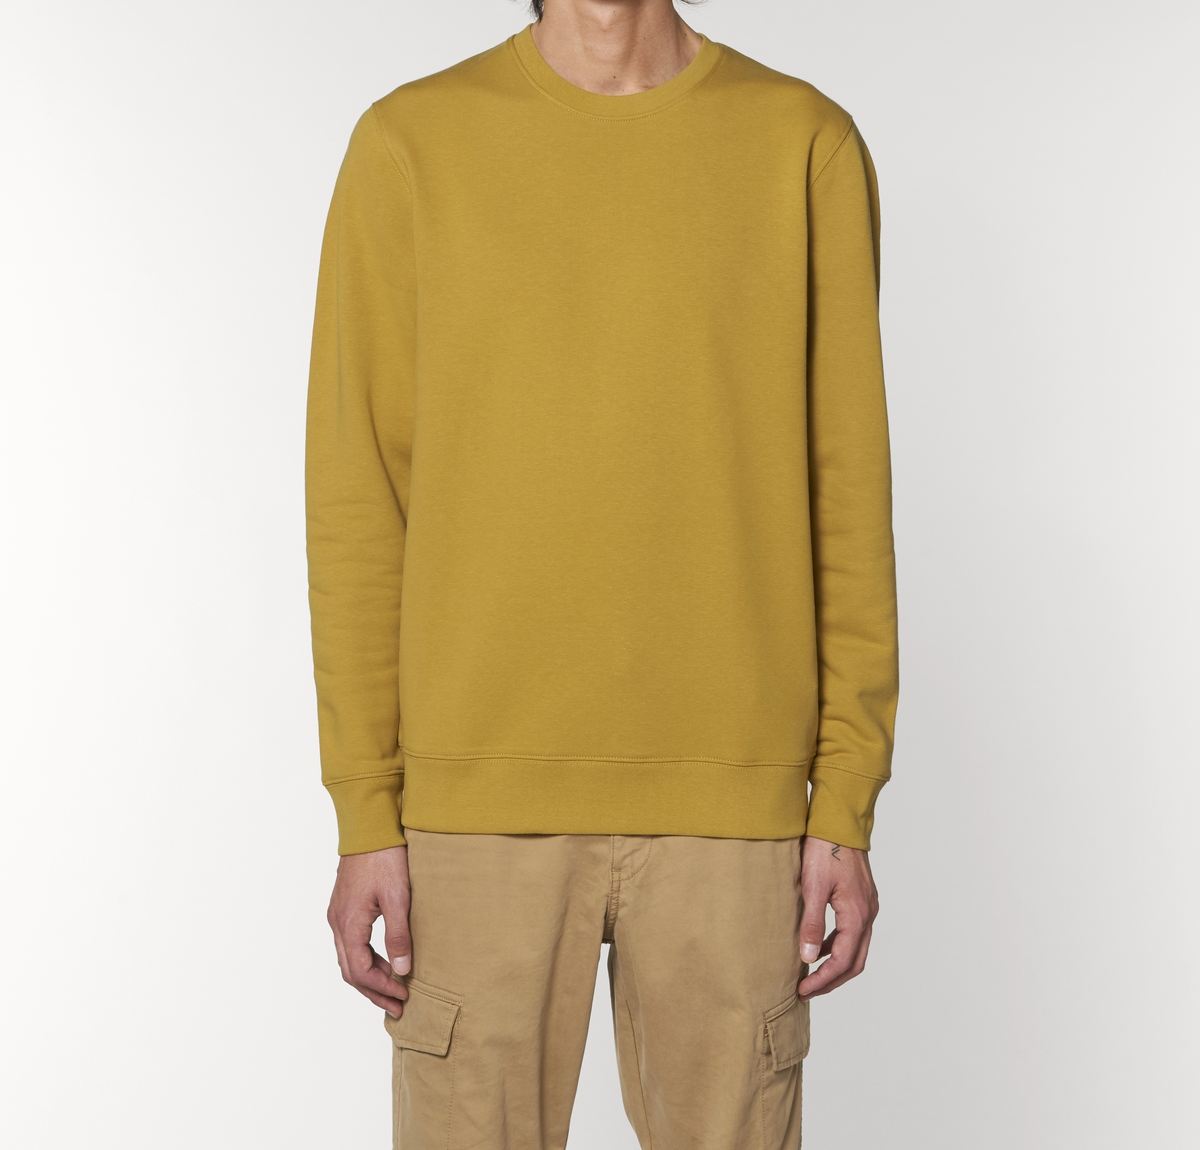 Sweater Modell: Chester von Unipolar